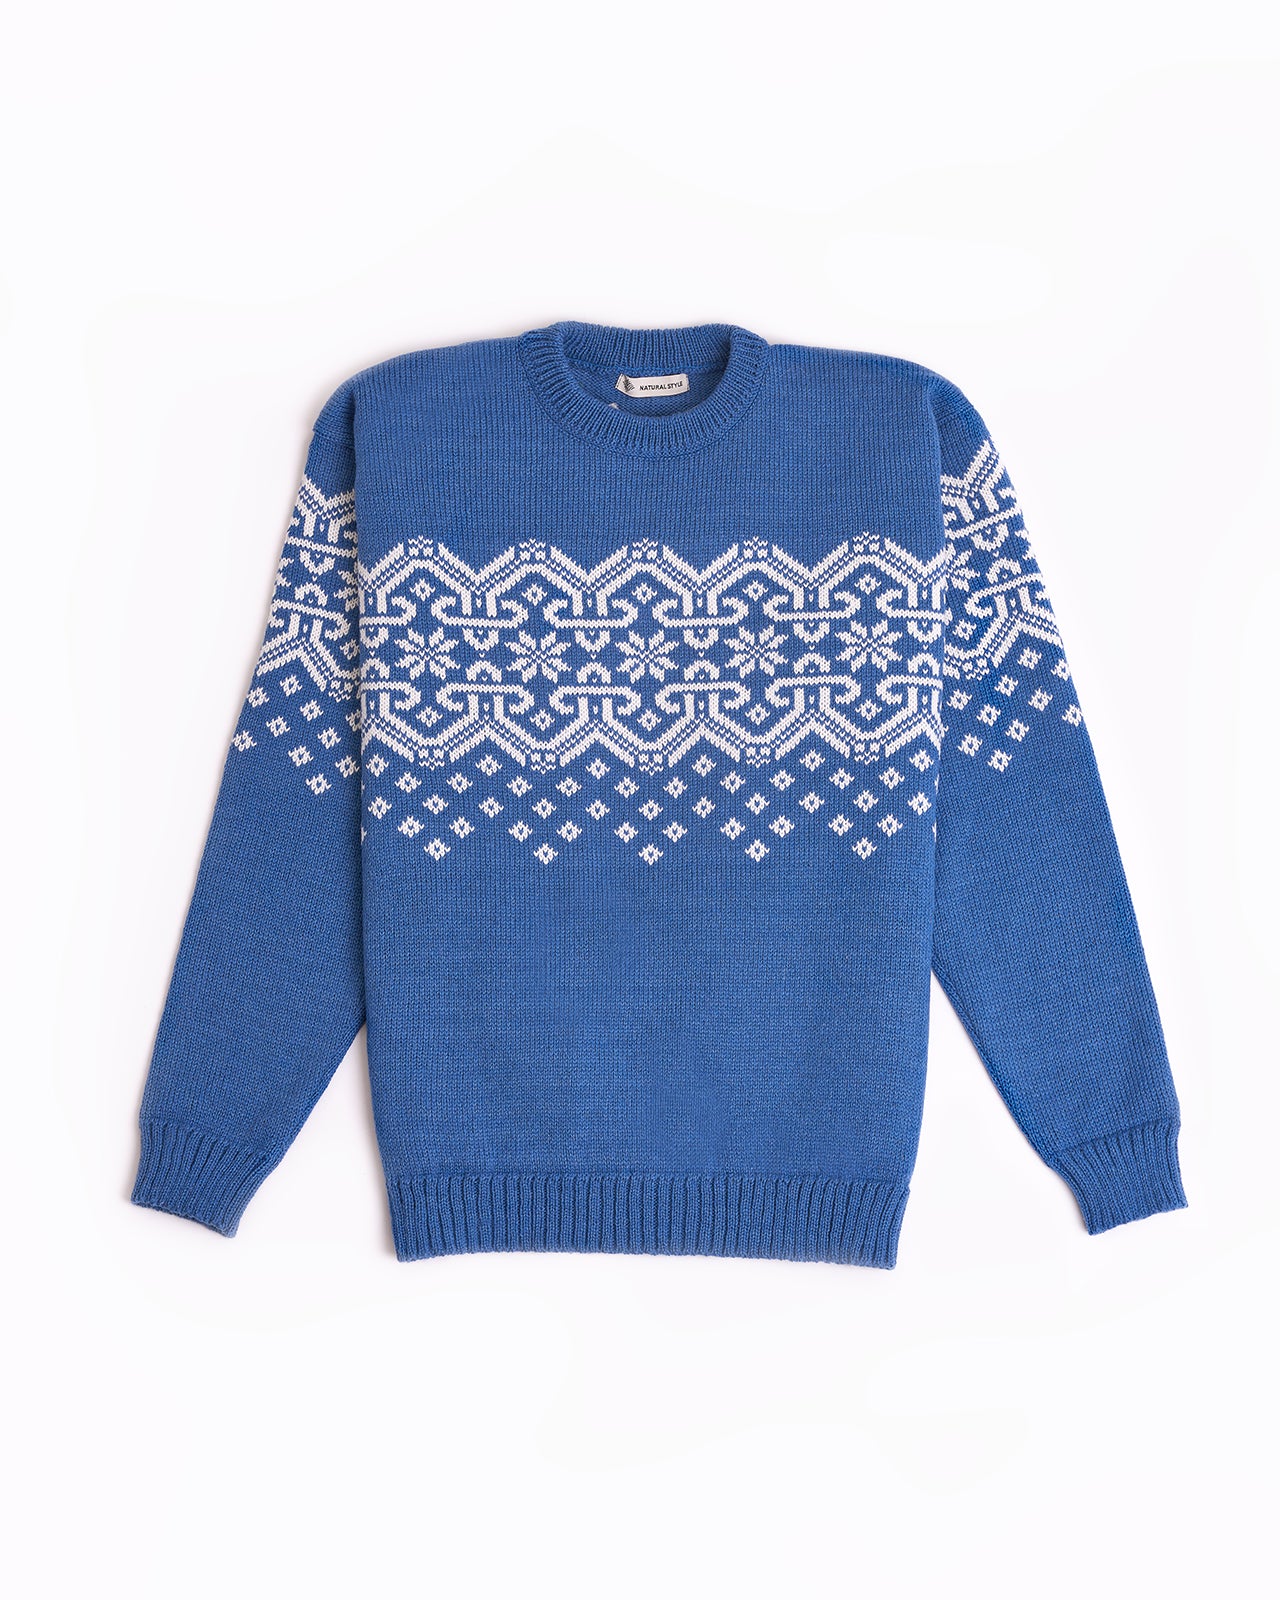 blue men's wool sweater